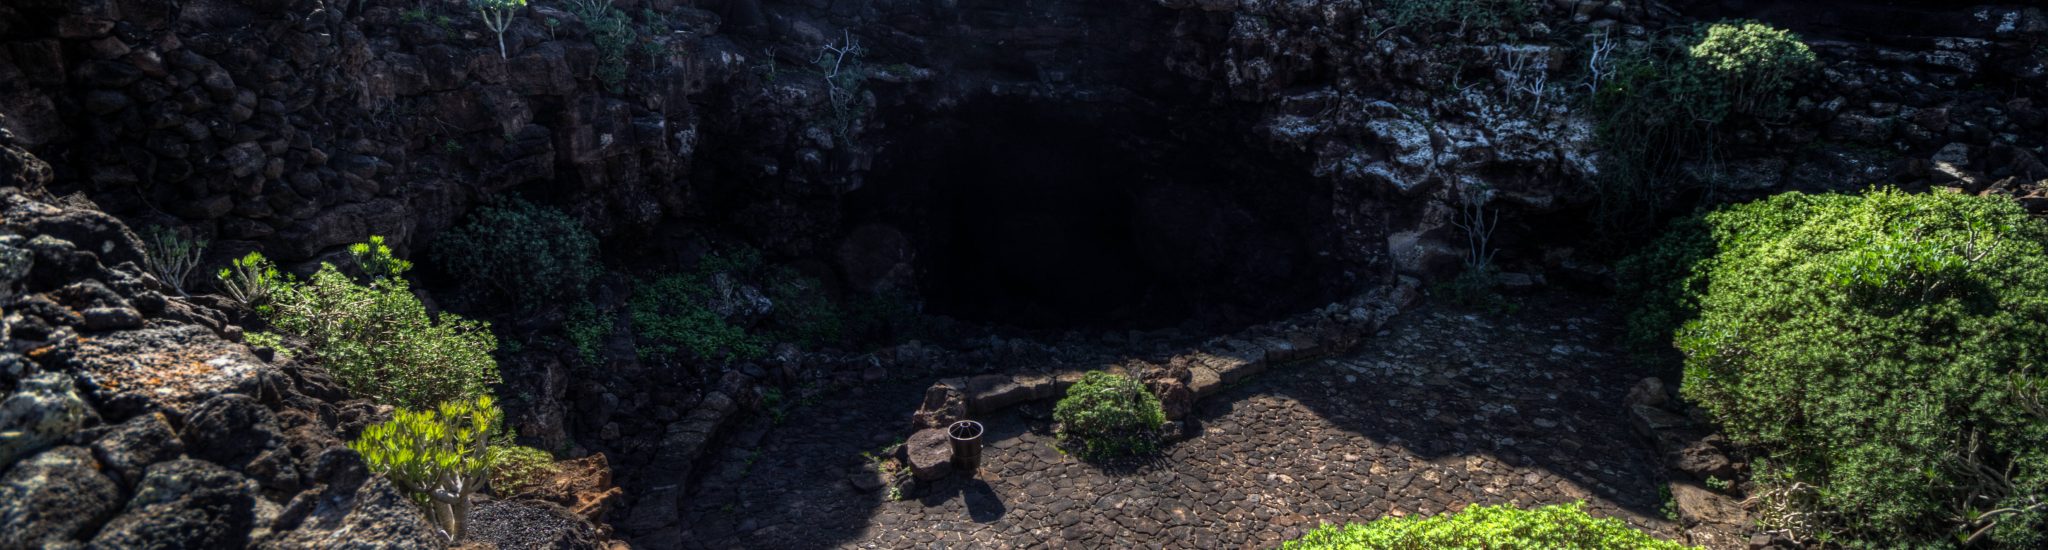 Cueva De Los Verdes Lanzarote